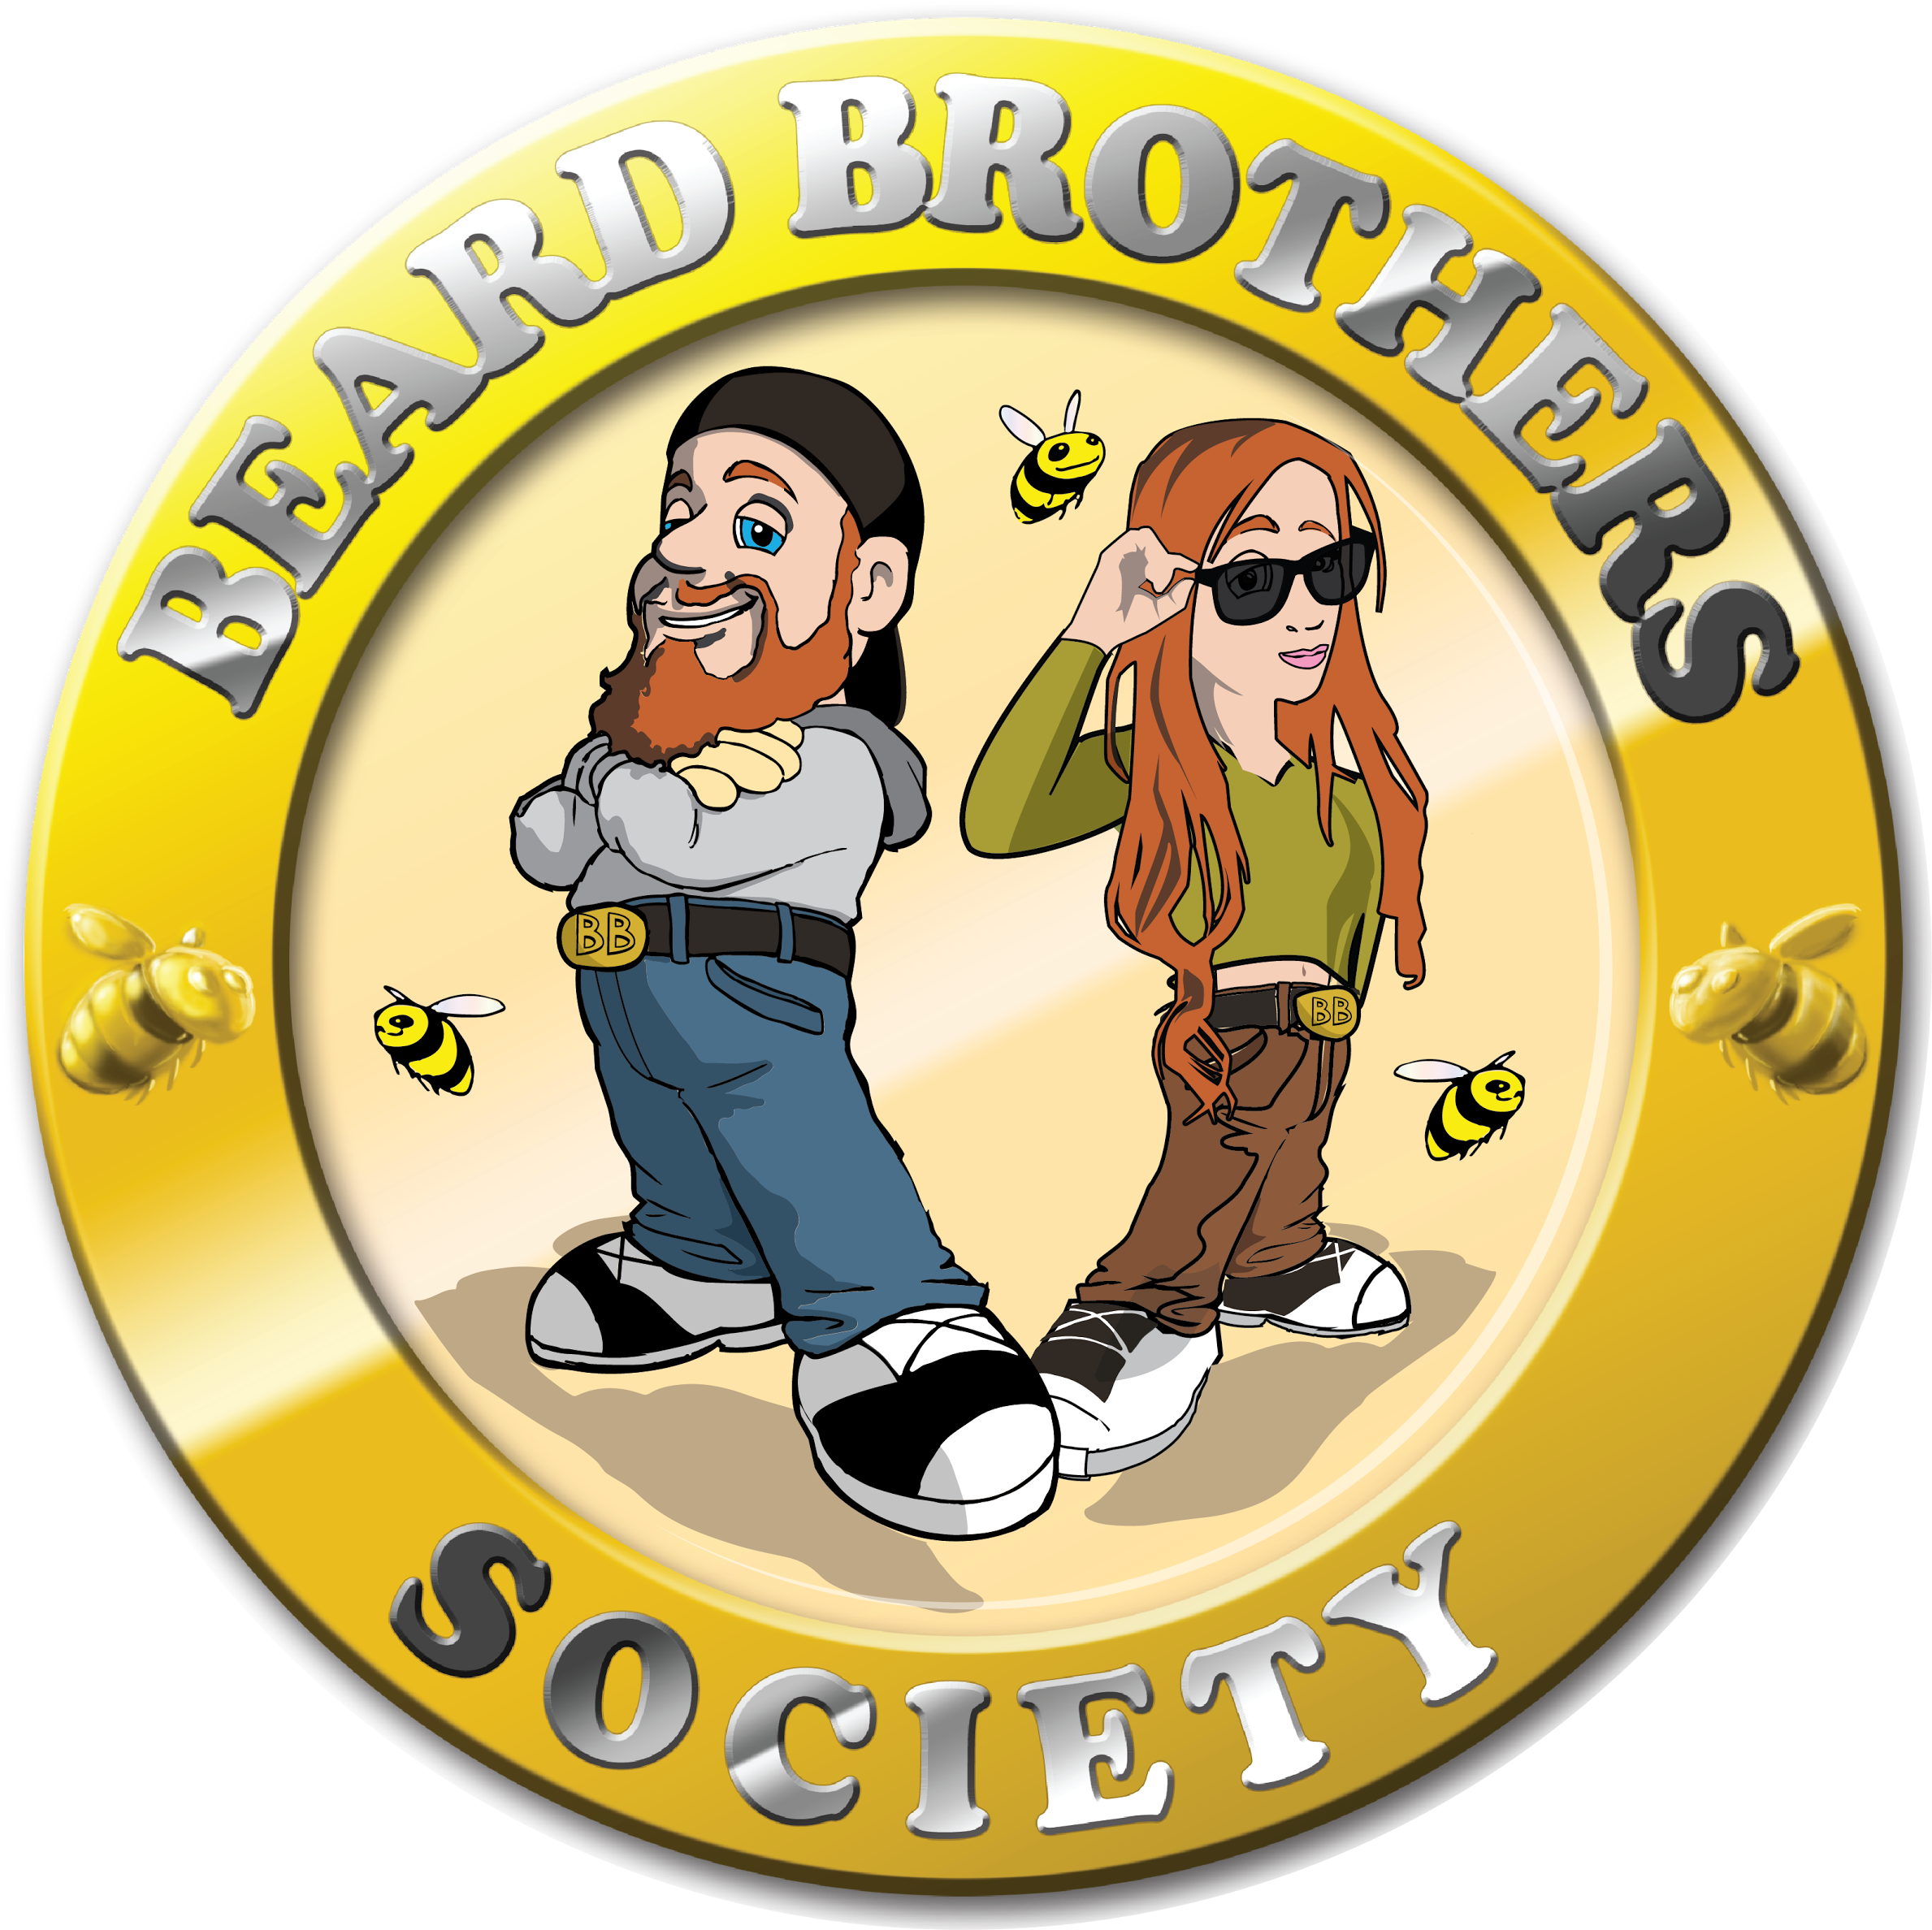 Beard Brothers Society - Beard Brothers Society (2400x2400)